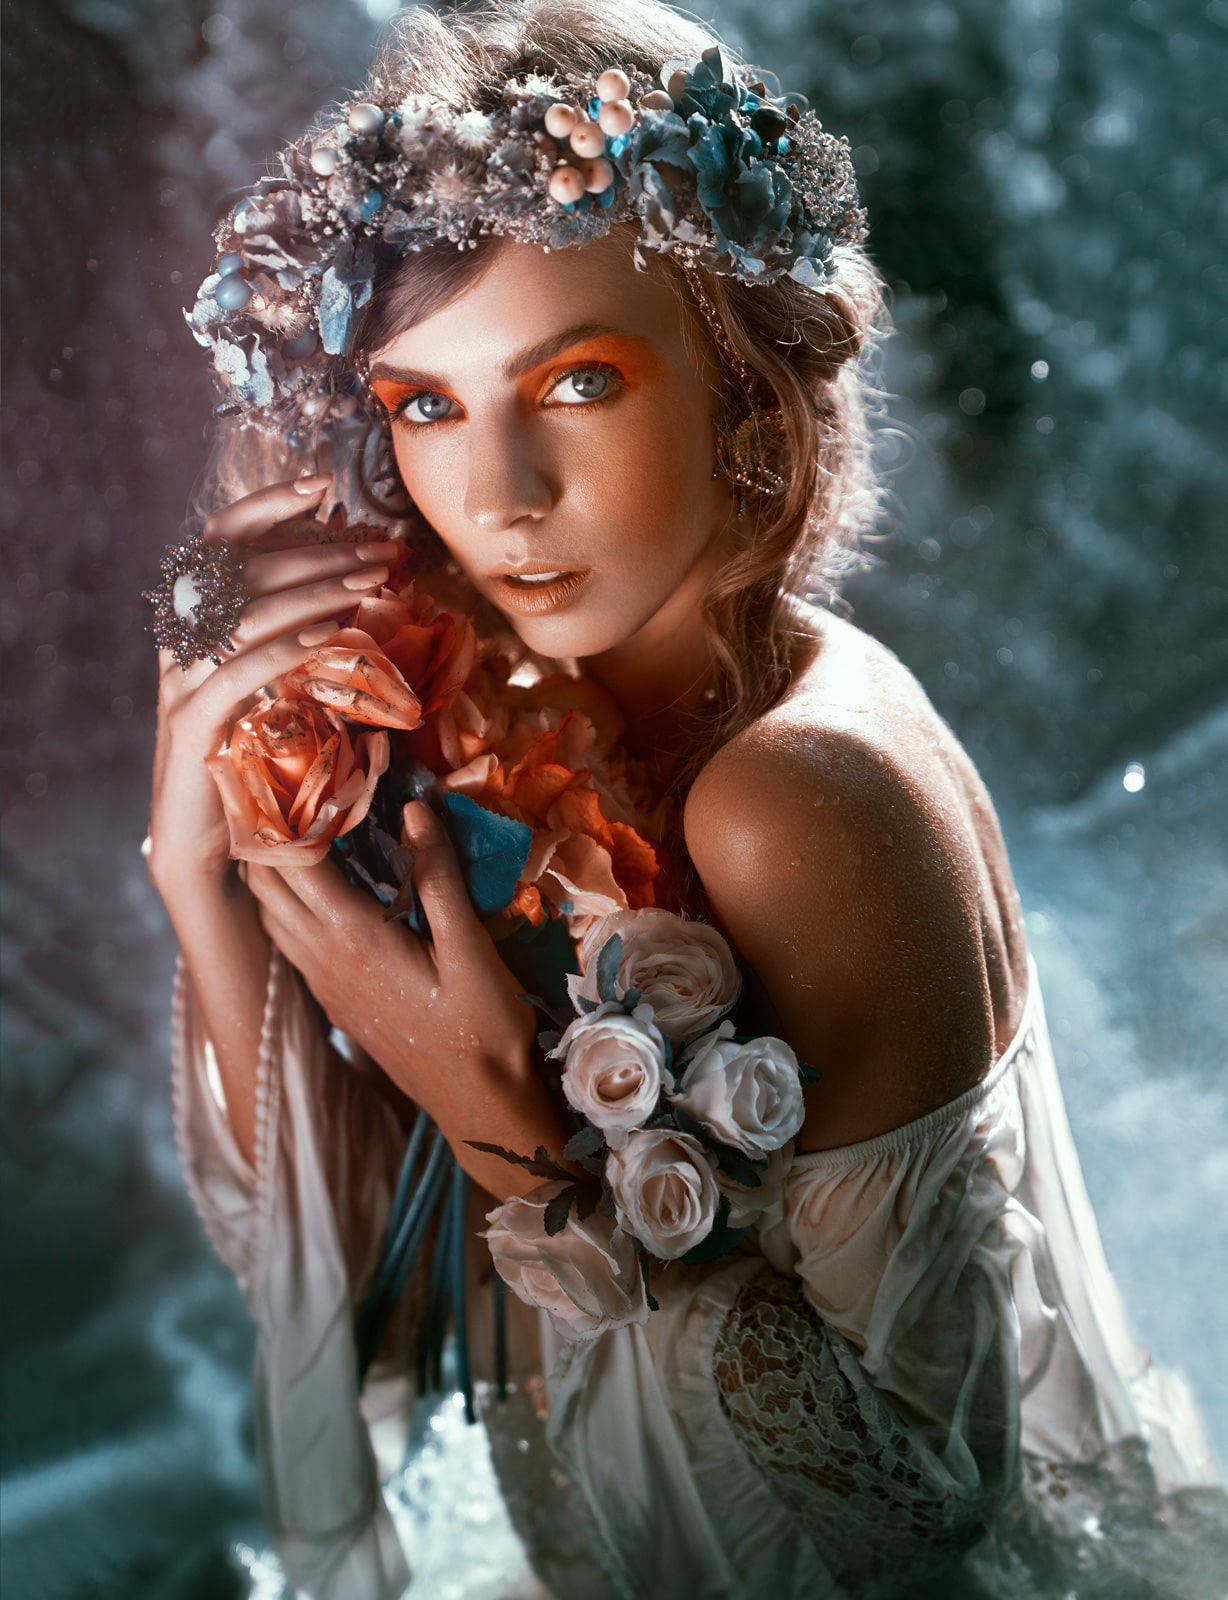 Portrait of a model wearing a flower headpiece